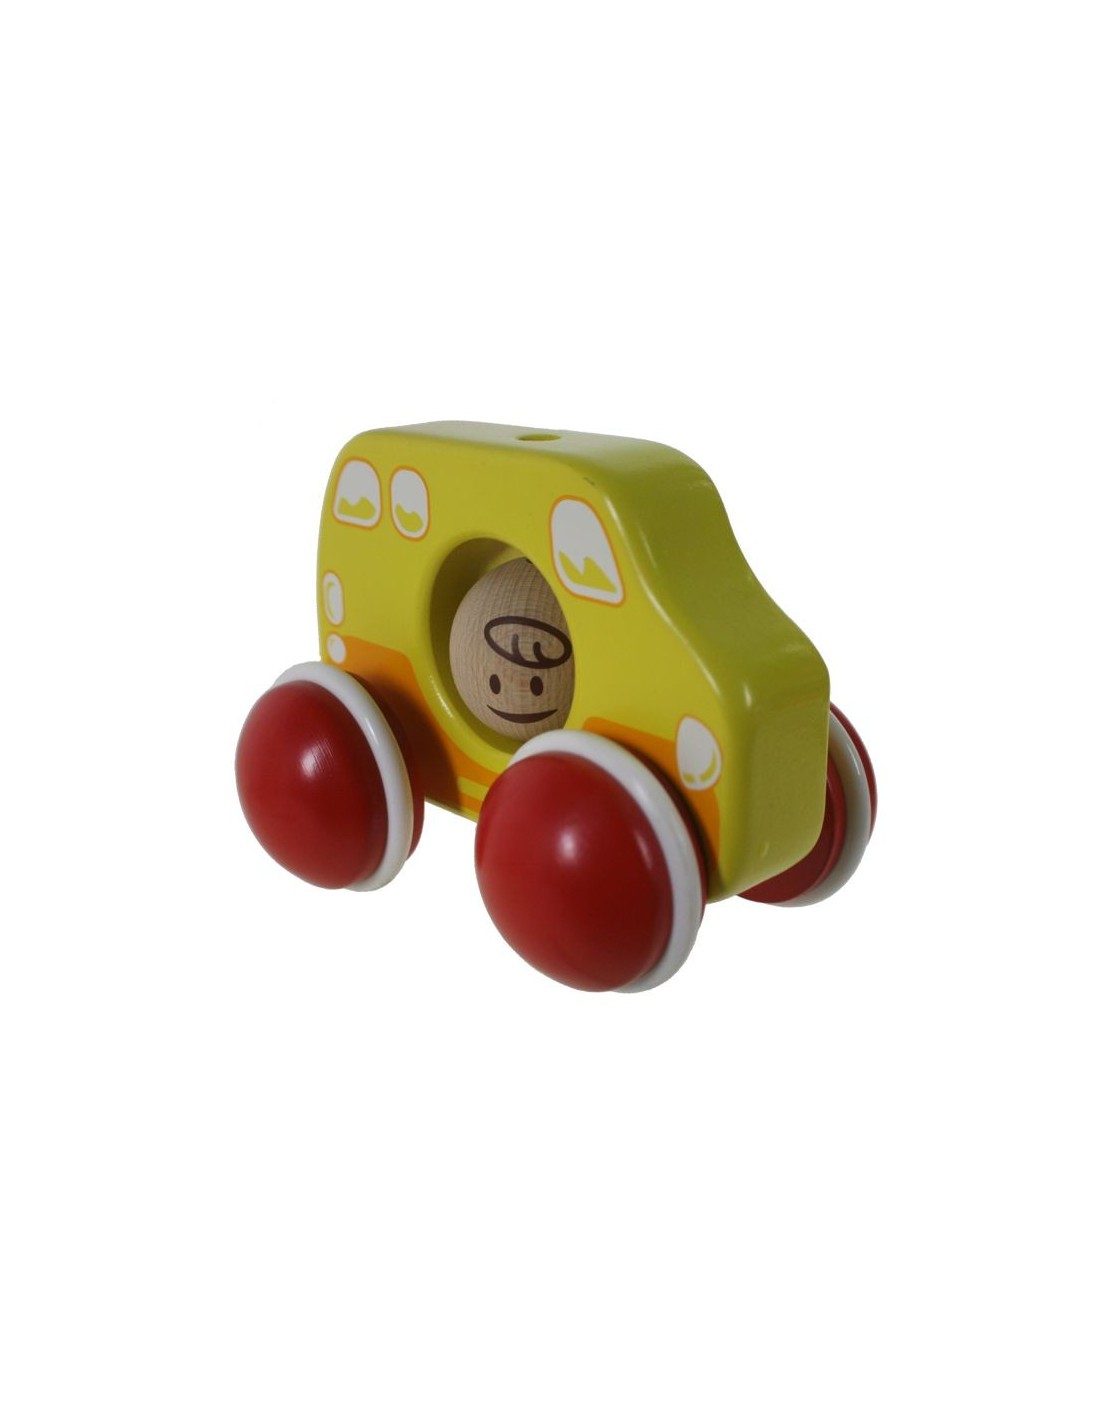 Coche arrastre pequeño de madera maciza con colorido y sonido juguete infantil para bebé.